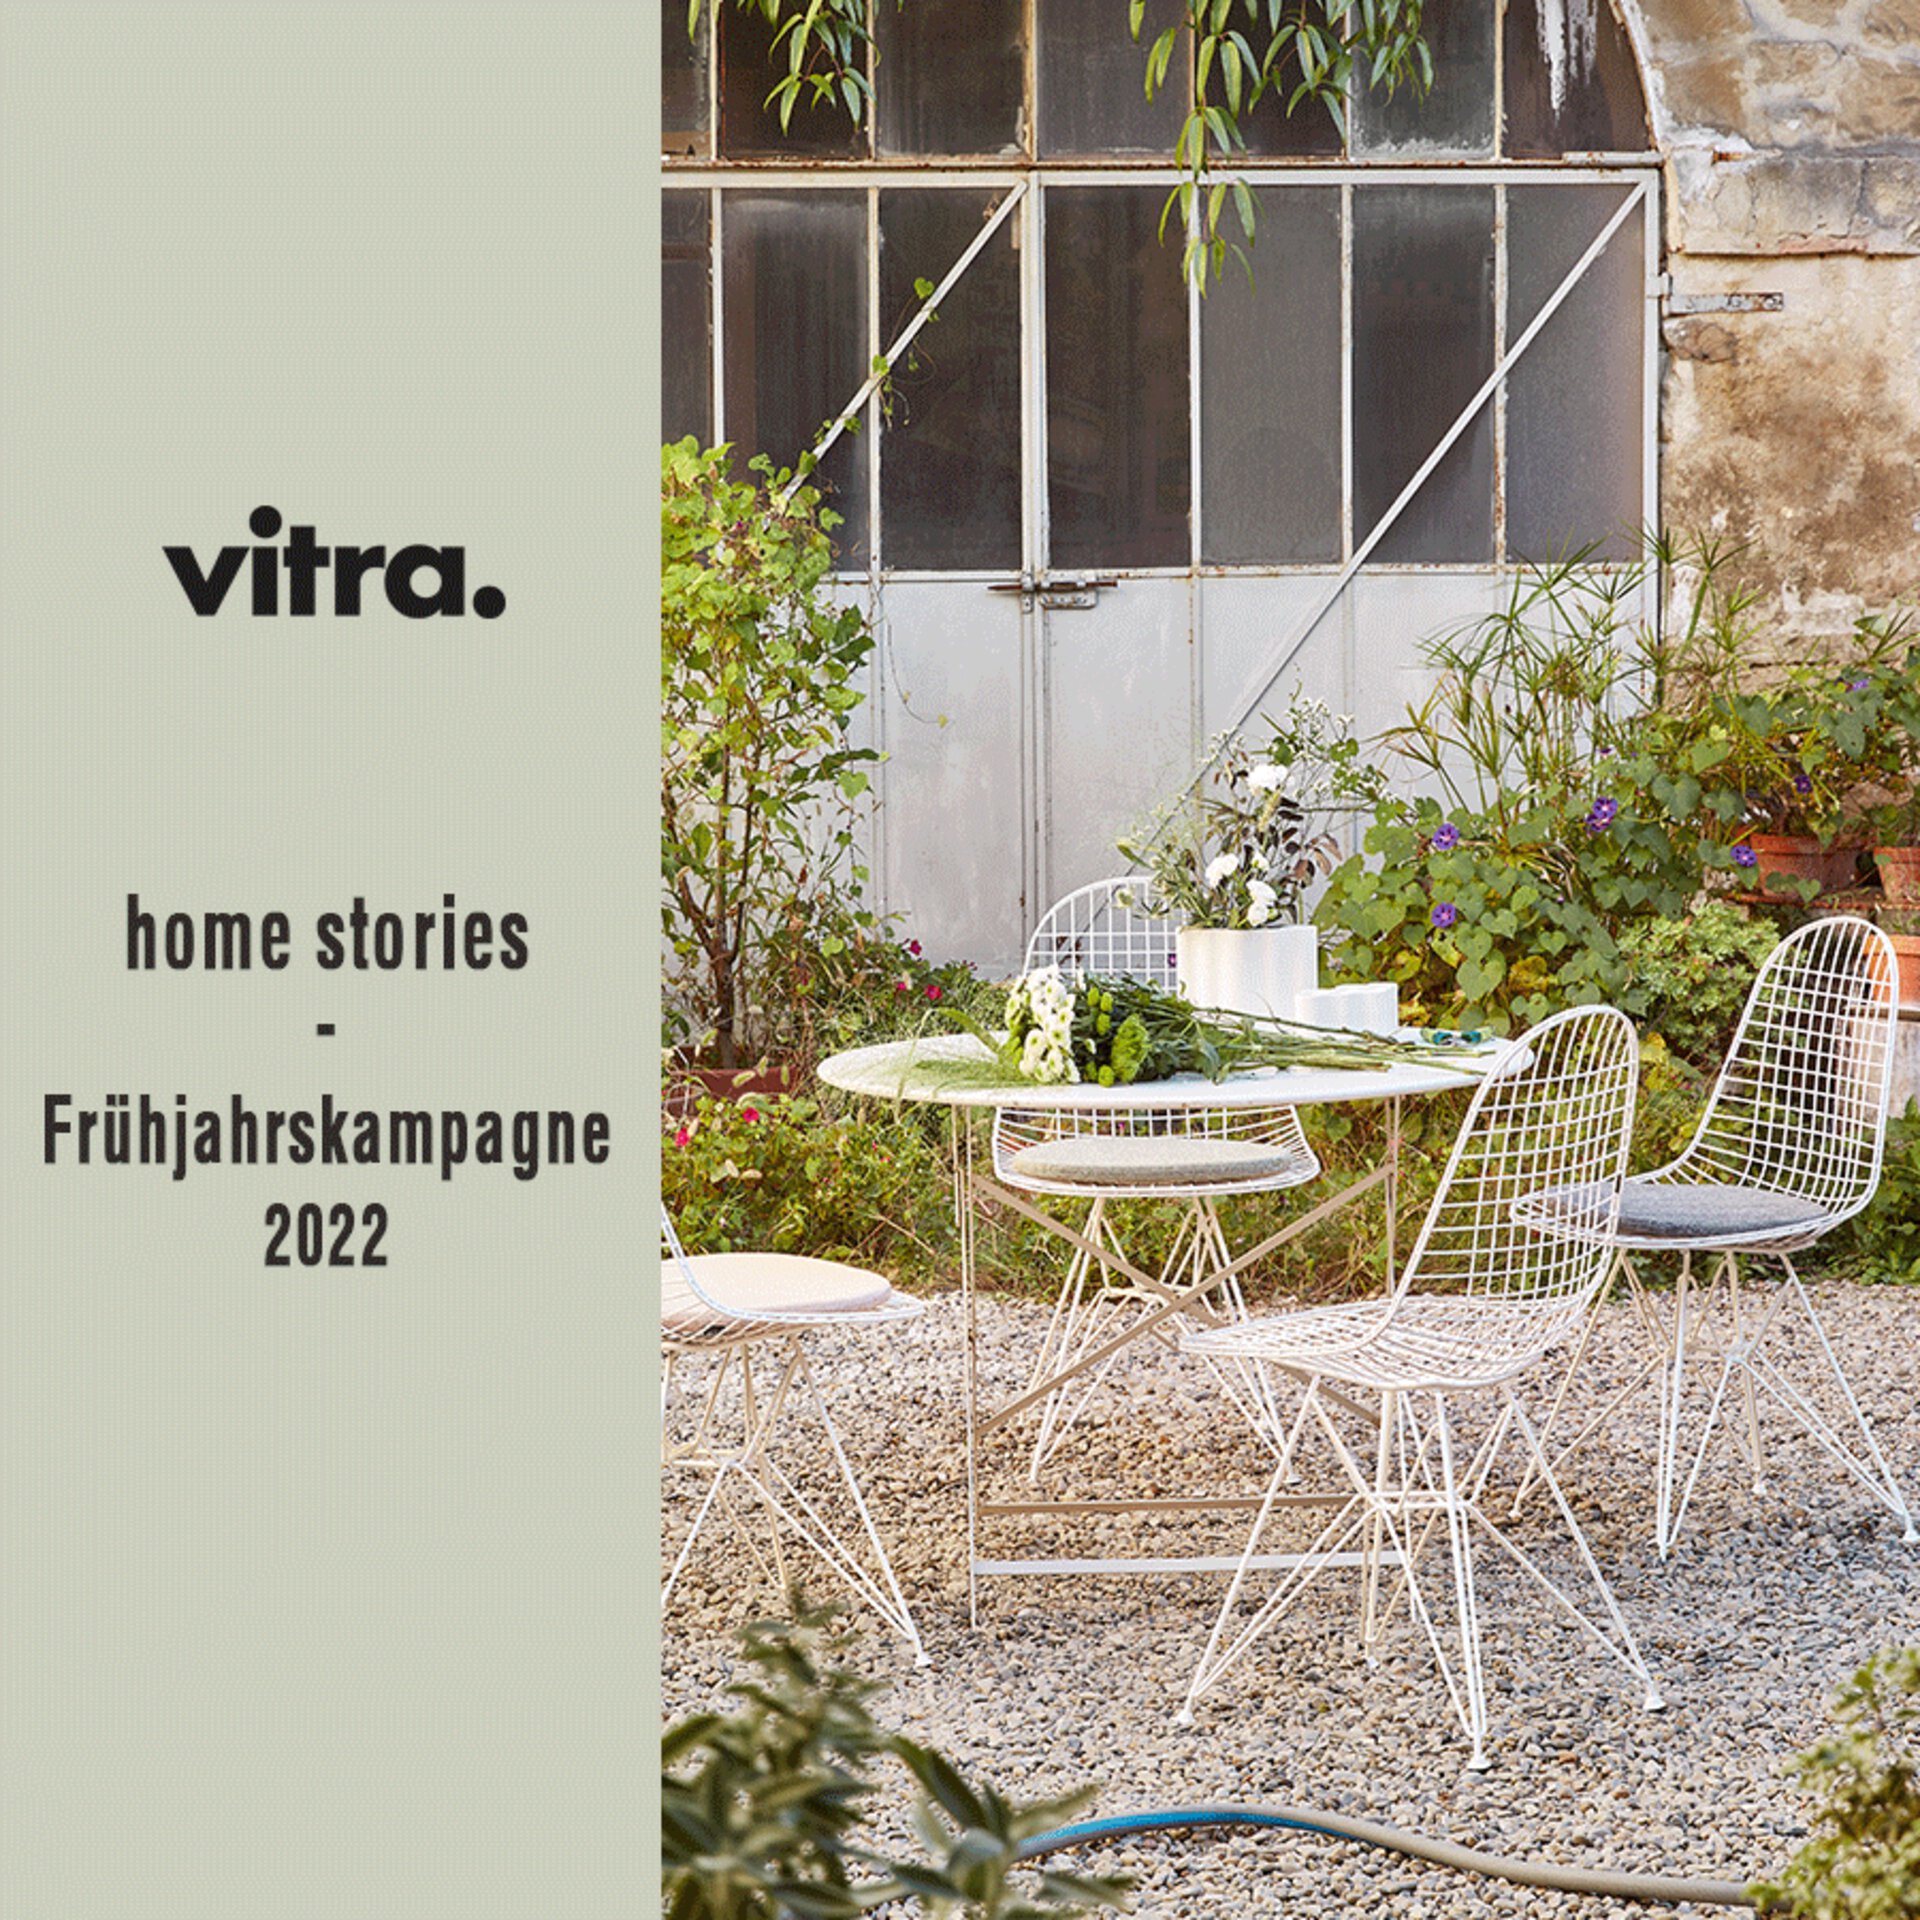 Teaserbild zur Vitra Frühjahrskampagne "Home Stories for Spring" bei interni by inhofer